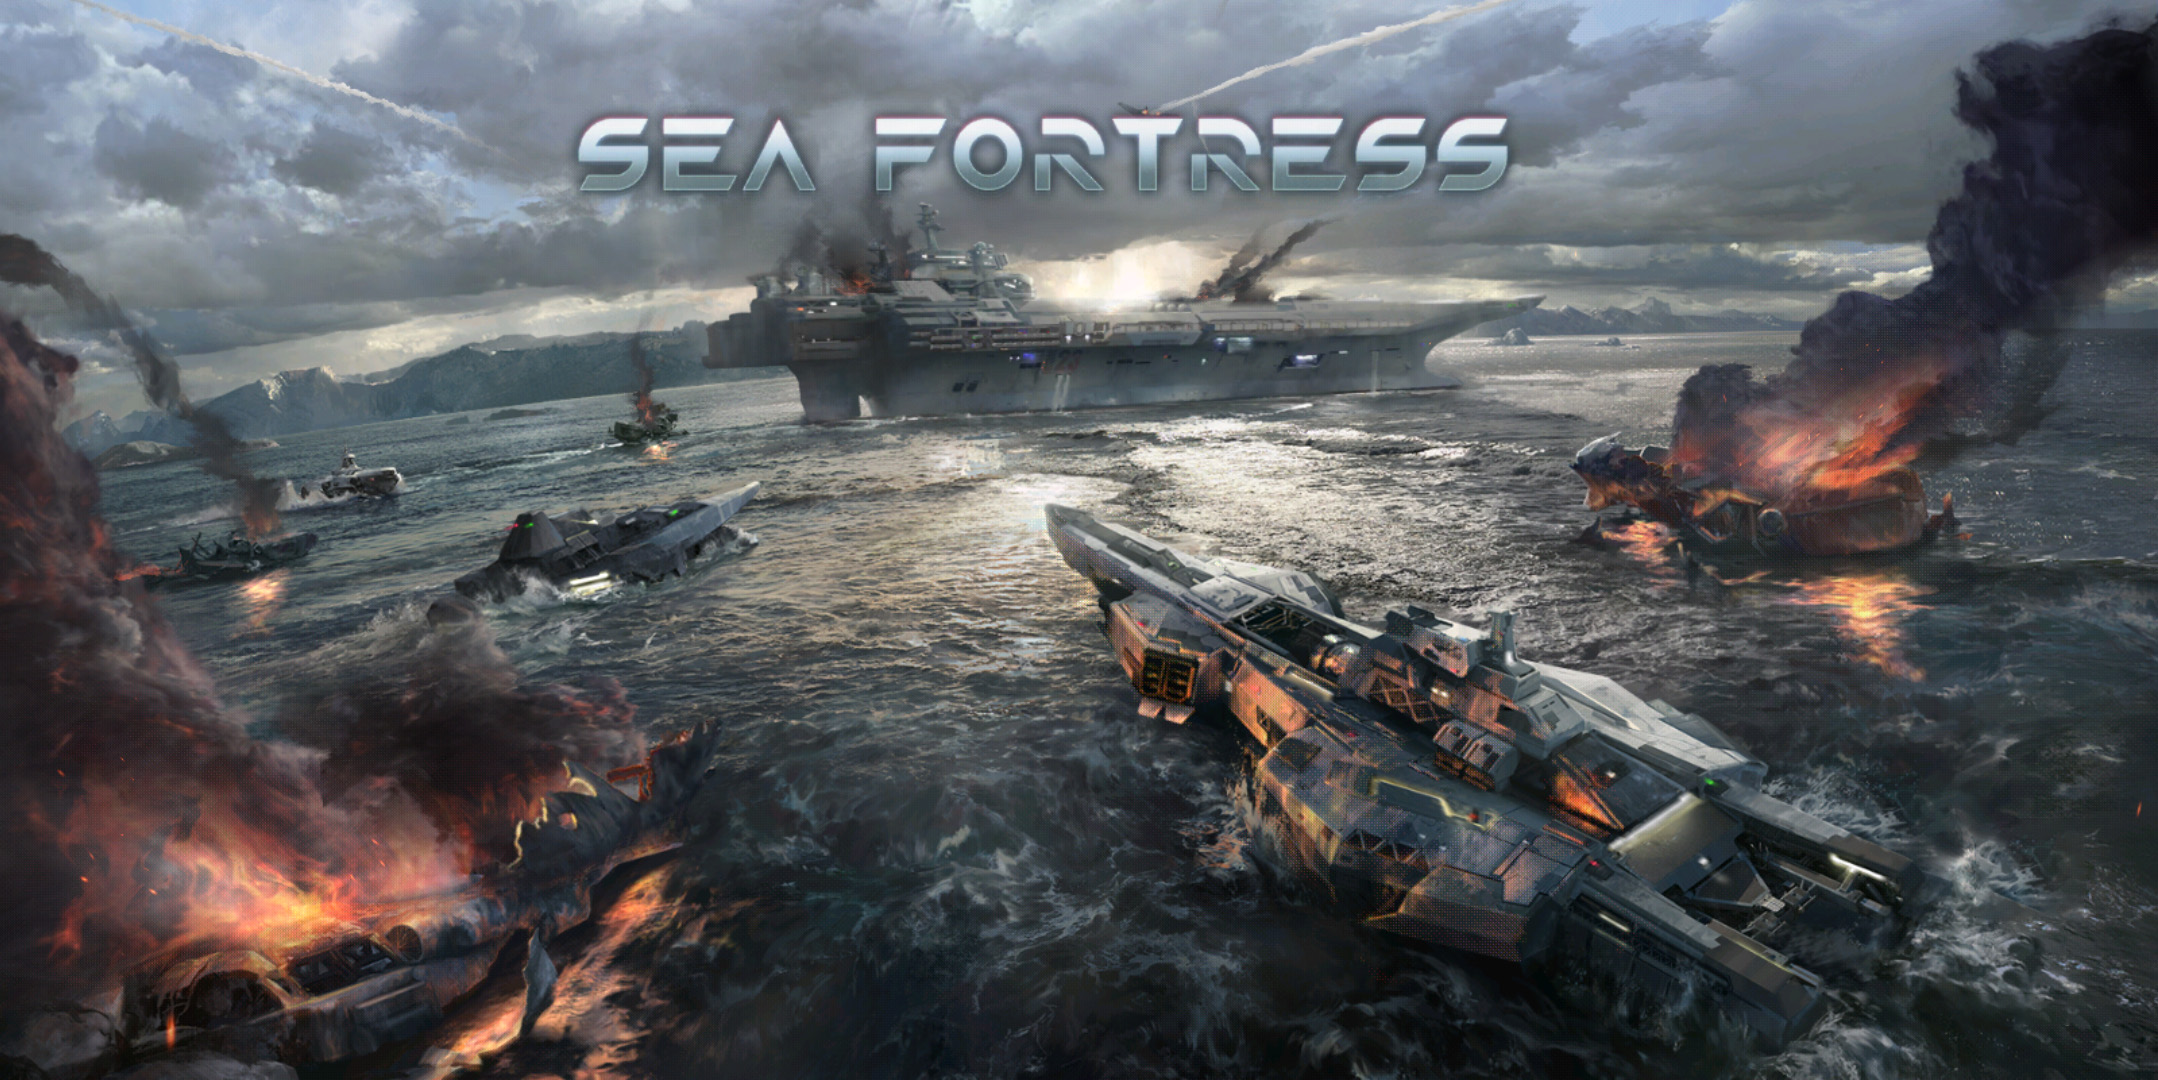 Chơi thử Sea Fortress - Hải chiến: game mobile chiến thuật mới ra lò